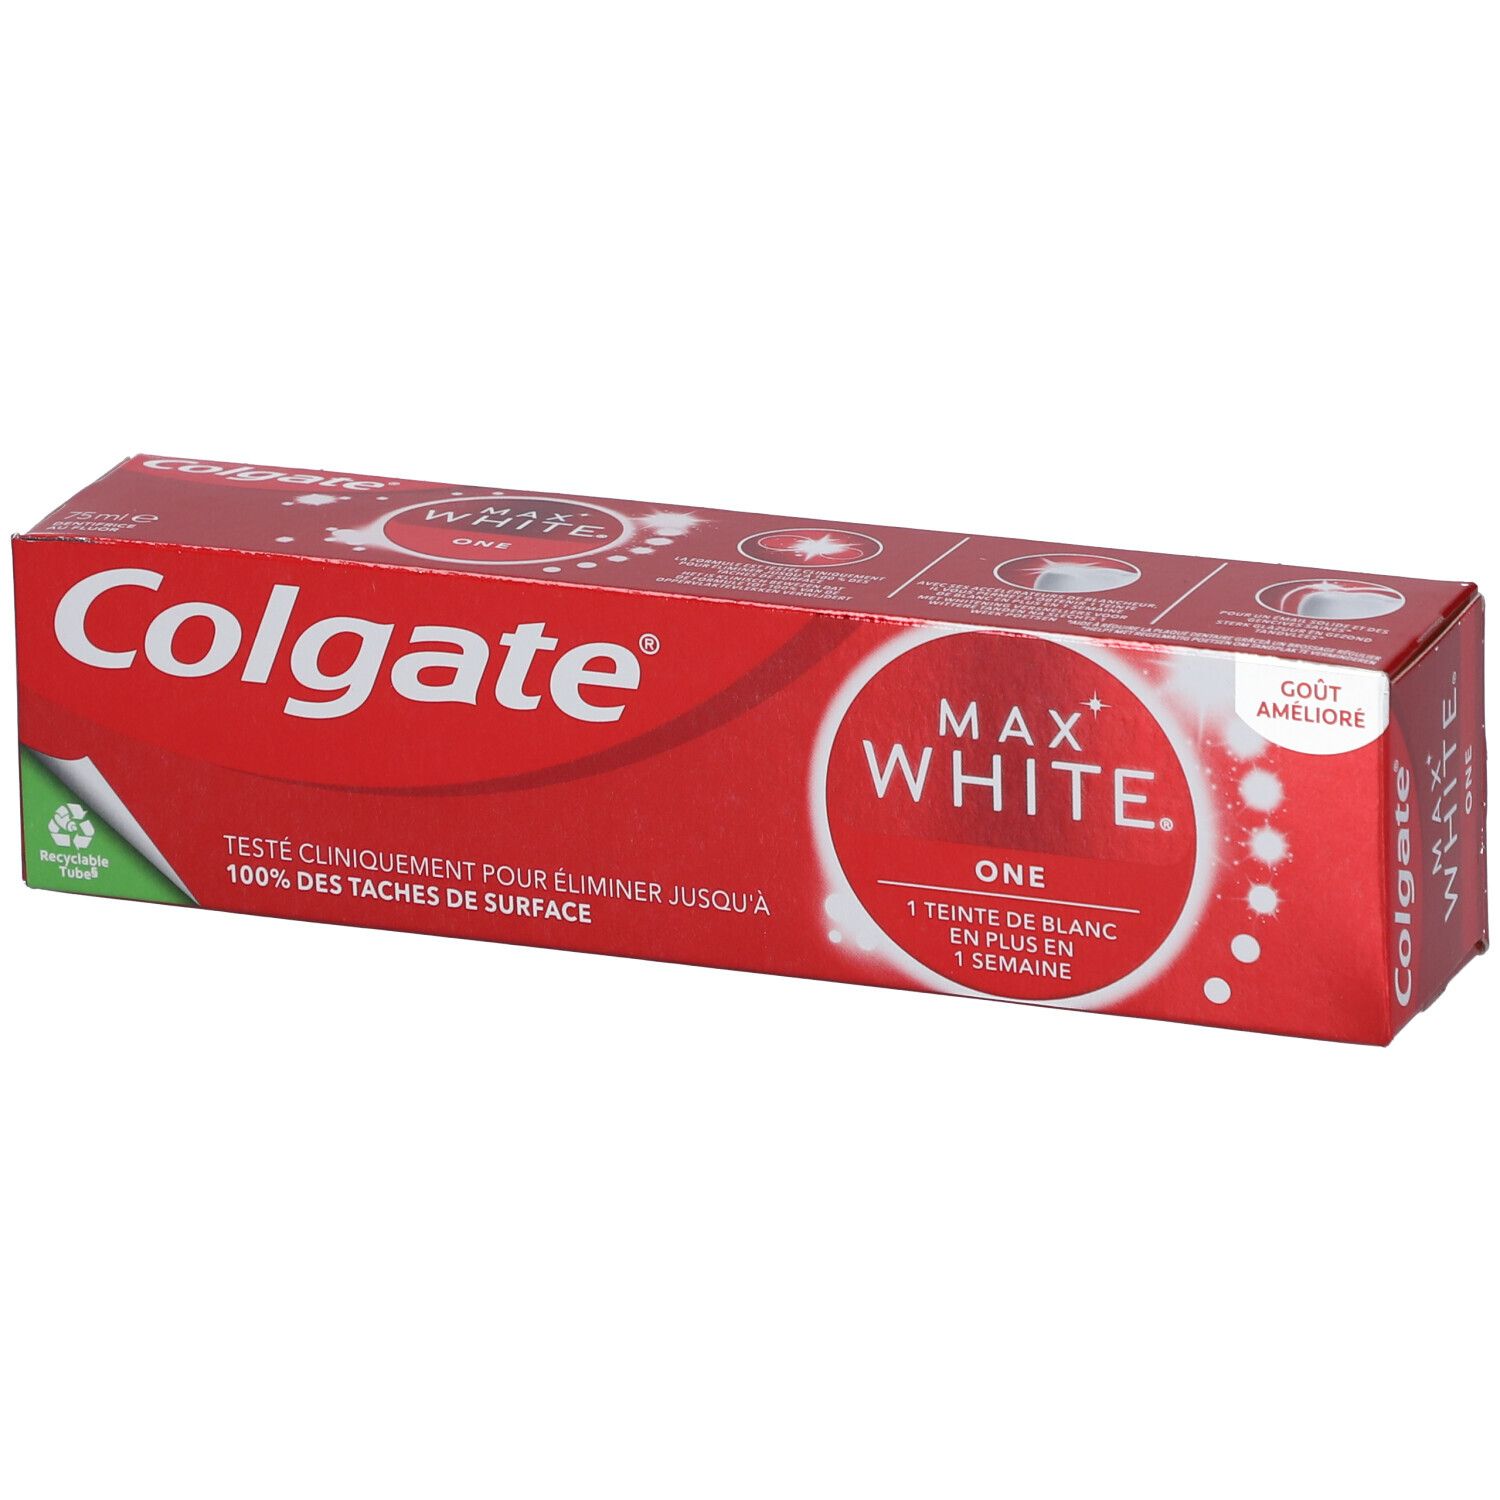 Colgate® Max White One Dentifrice